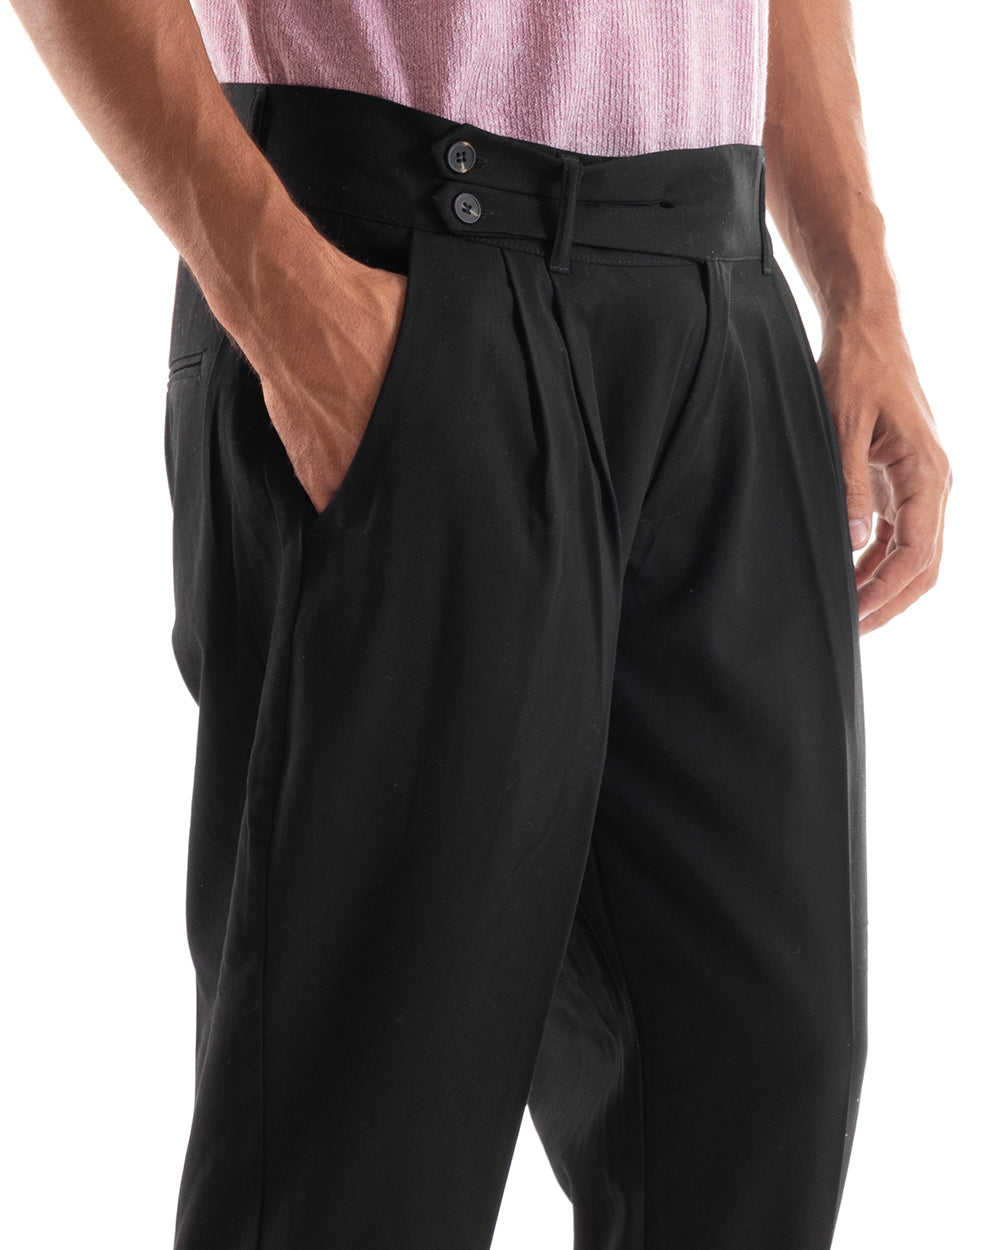 Pantaloni Uomo Abbottonatura Allungata Fibbia Alta Classico Pinces Elegante Nero GIOSAL-P5380A